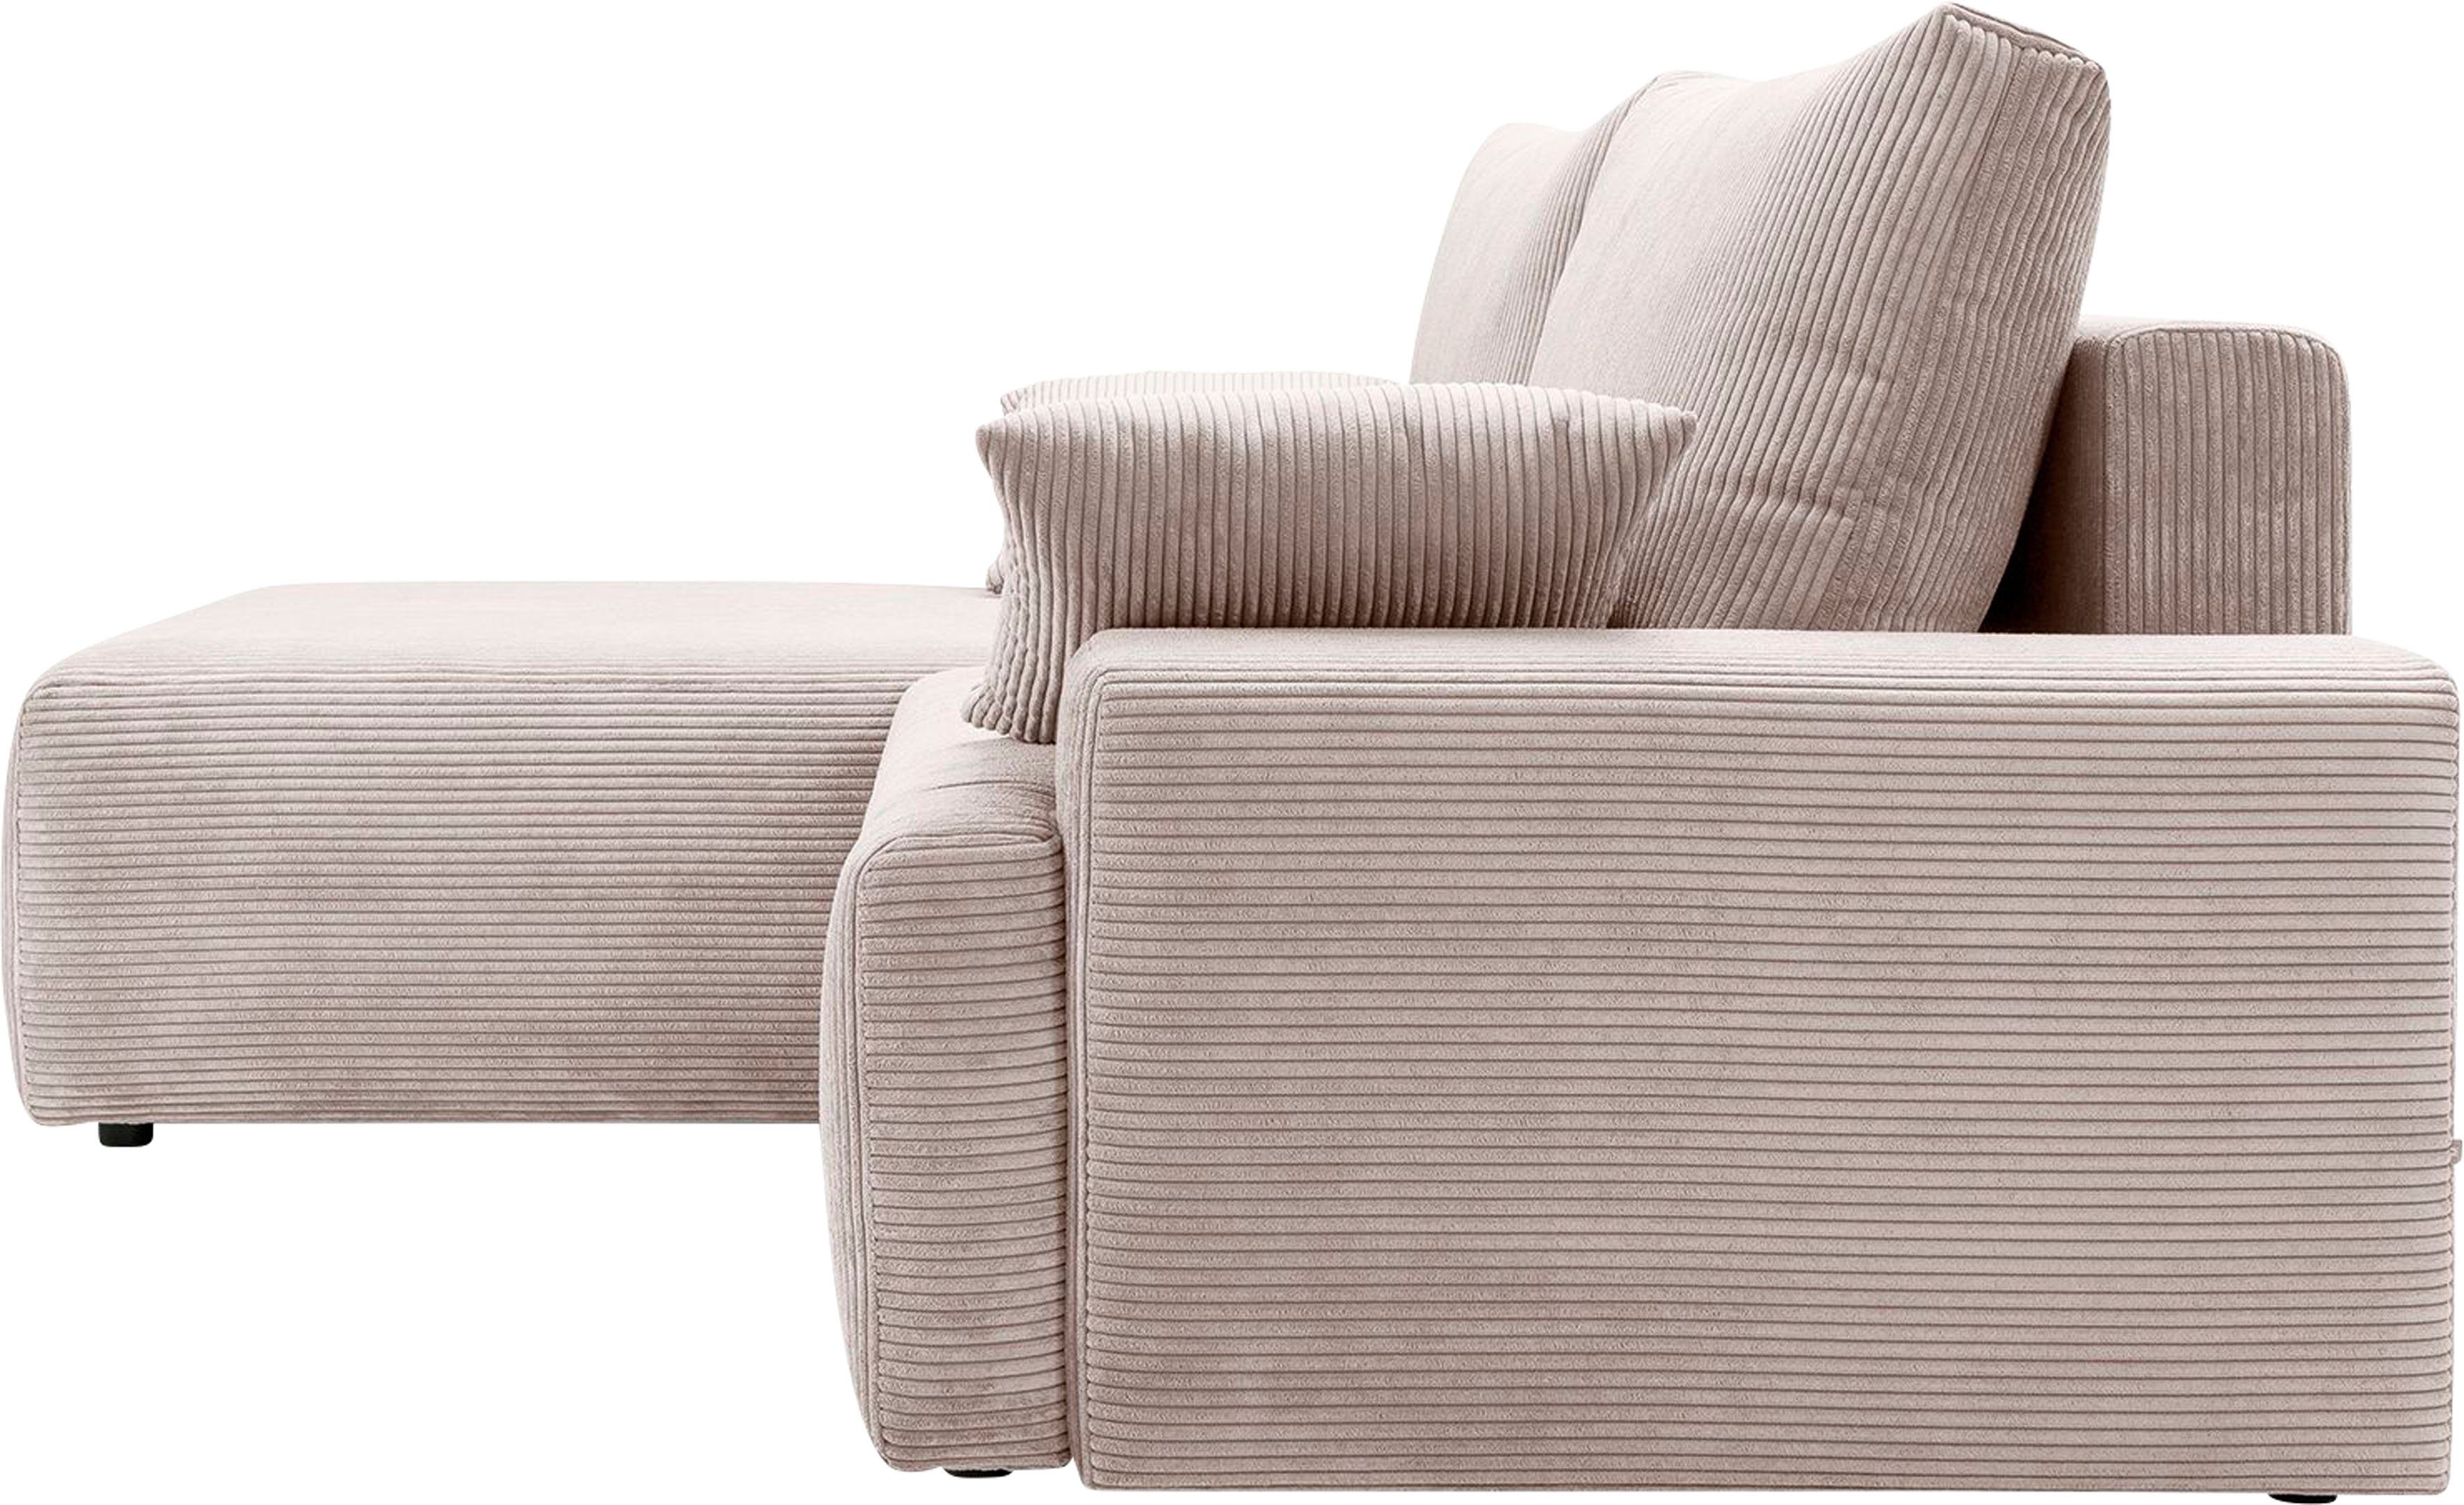 Bettfunktion Cord-Farben Ecksofa sofa Bettkasten beige inklusive und verschiedenen fashion - in Orinoko, exxpo